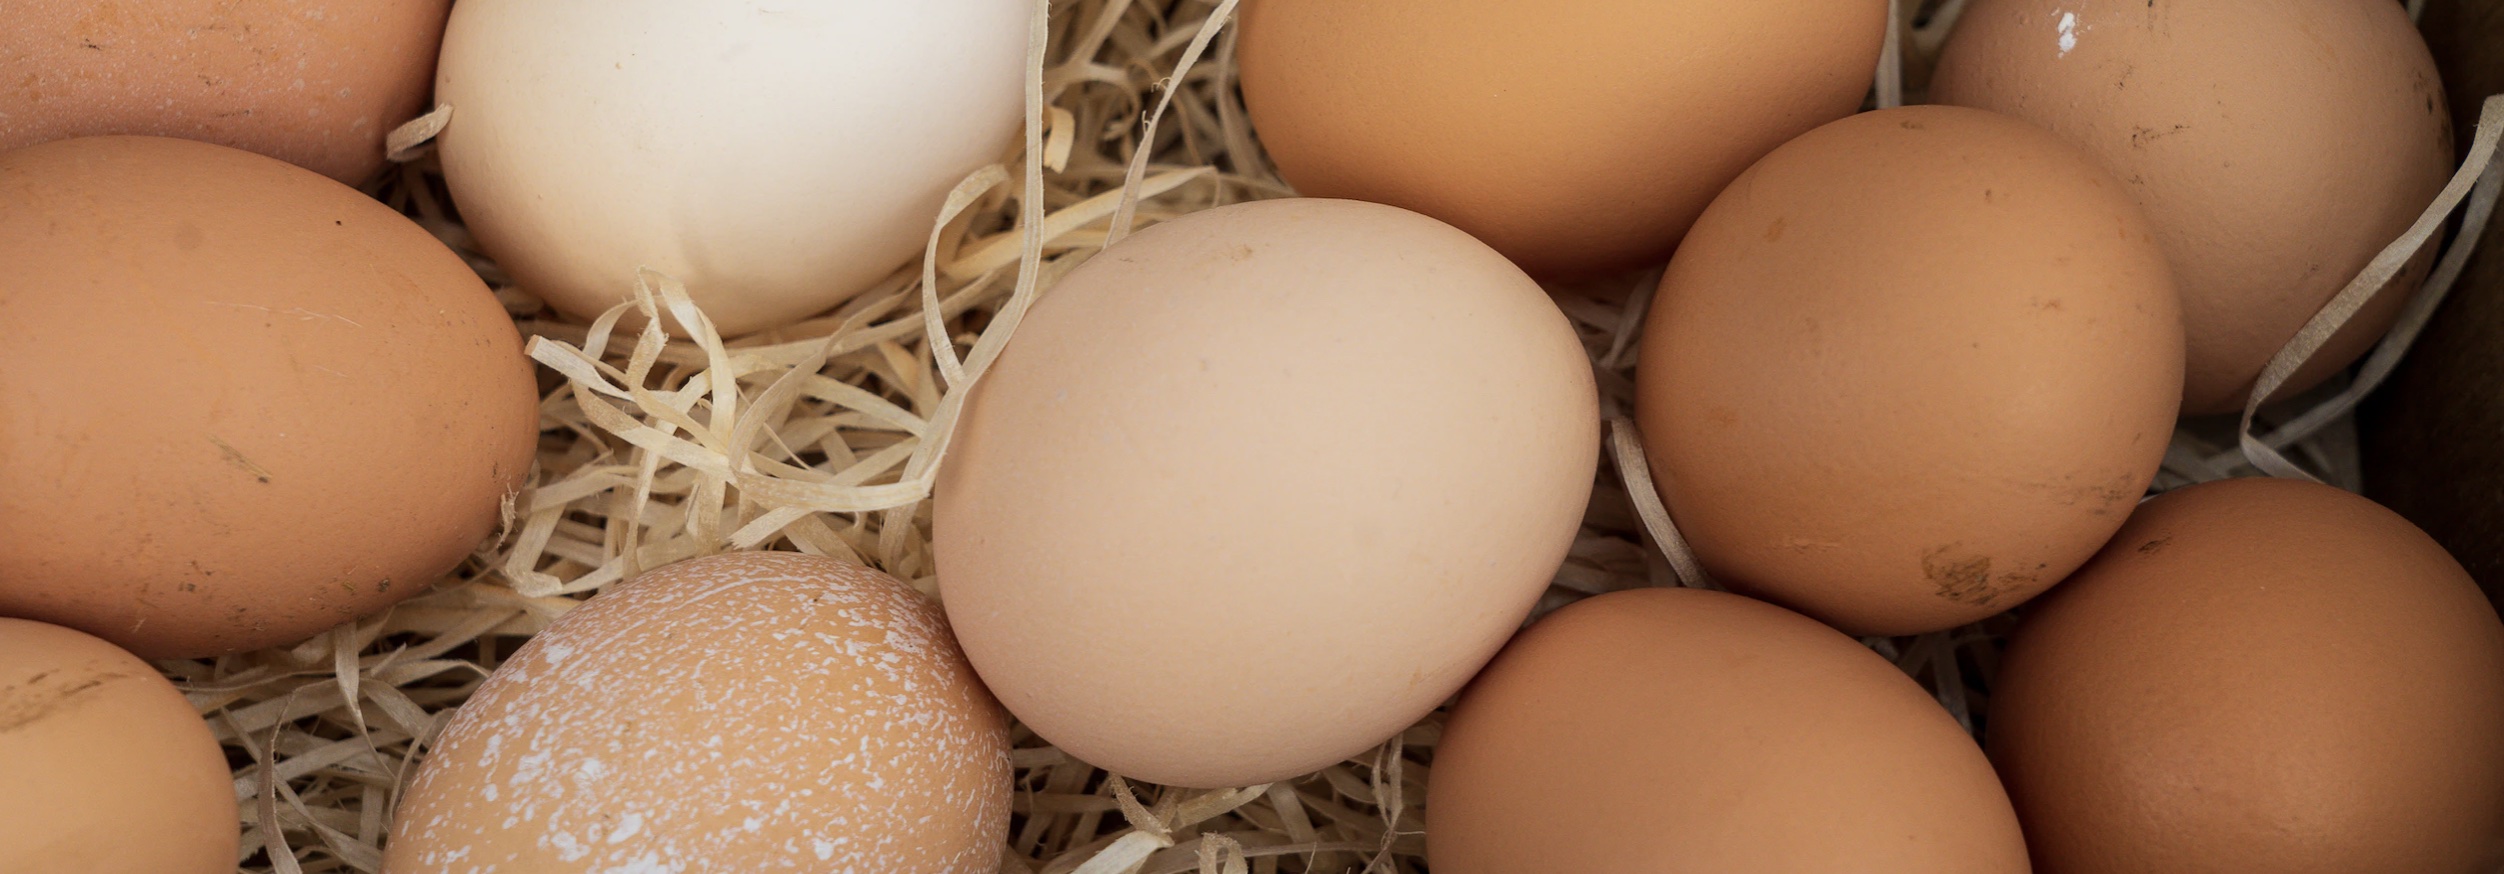 Все крупные производители яиц отчитались о рекордной прибыли